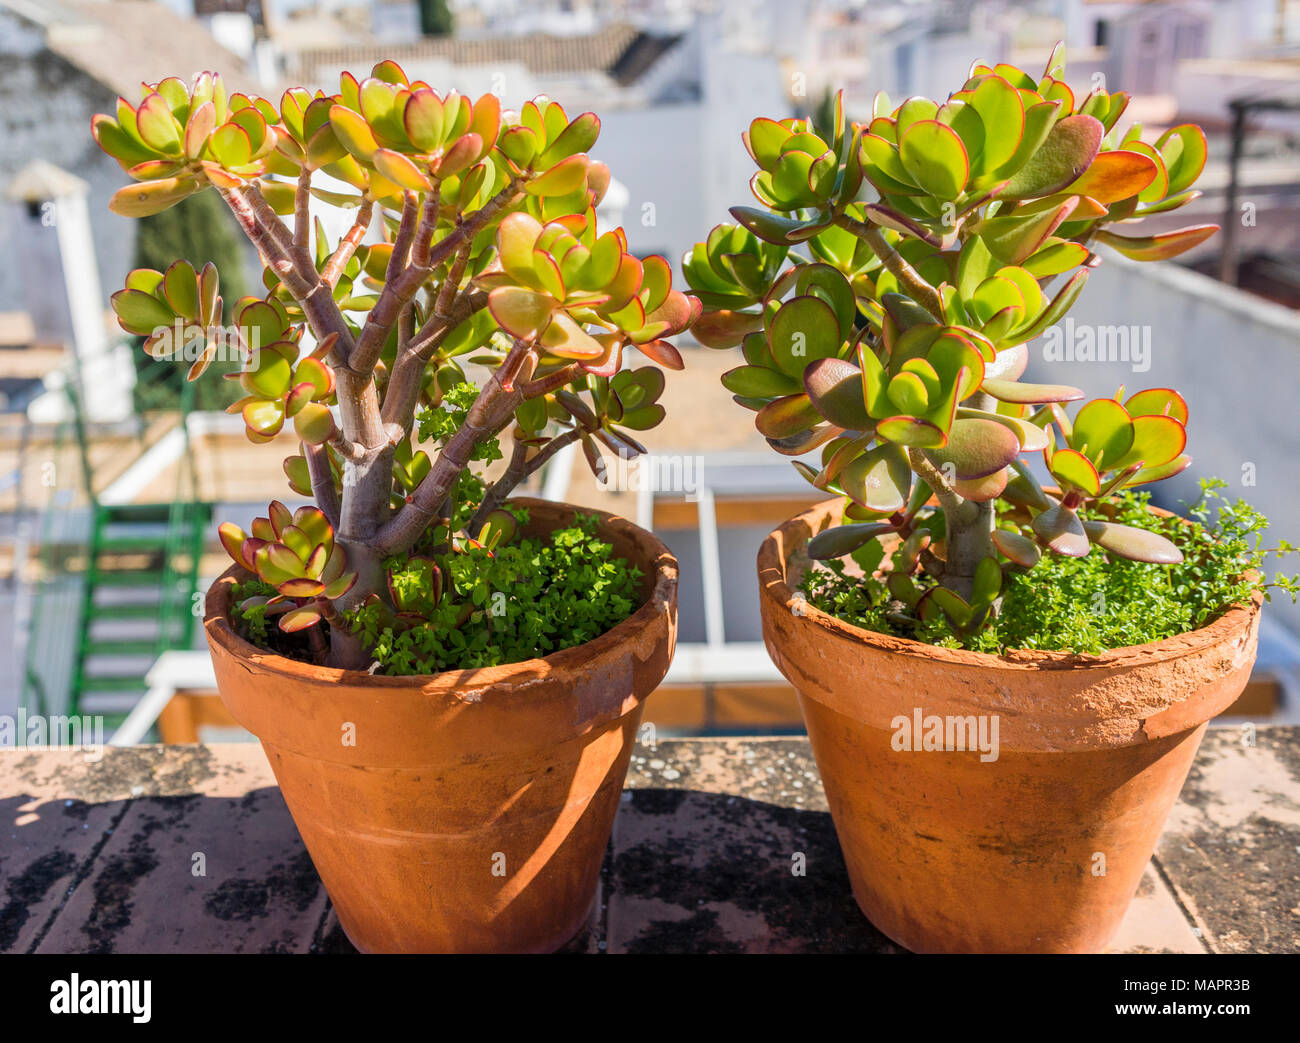 Dos plantas de jade (Crassula ovata) que son plantas suculentas que crecen  en macetas de terracota en un balcón en España, la planta se conoce también  como árbol de dinero Fotografía de